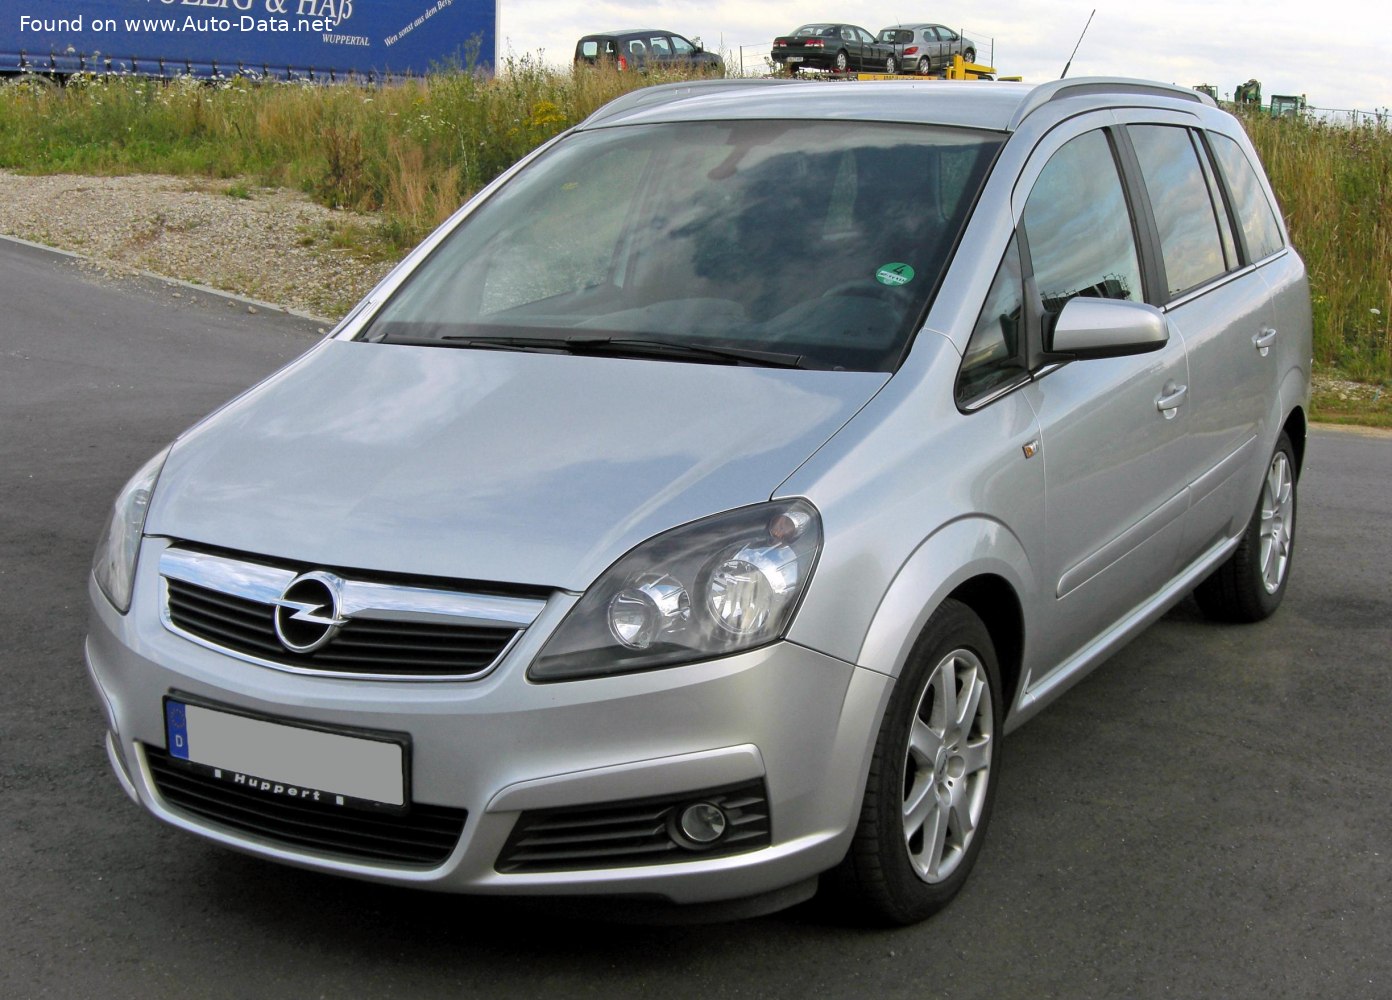 2005 Opel Zafira B 1.9 CDTI (120 hk)